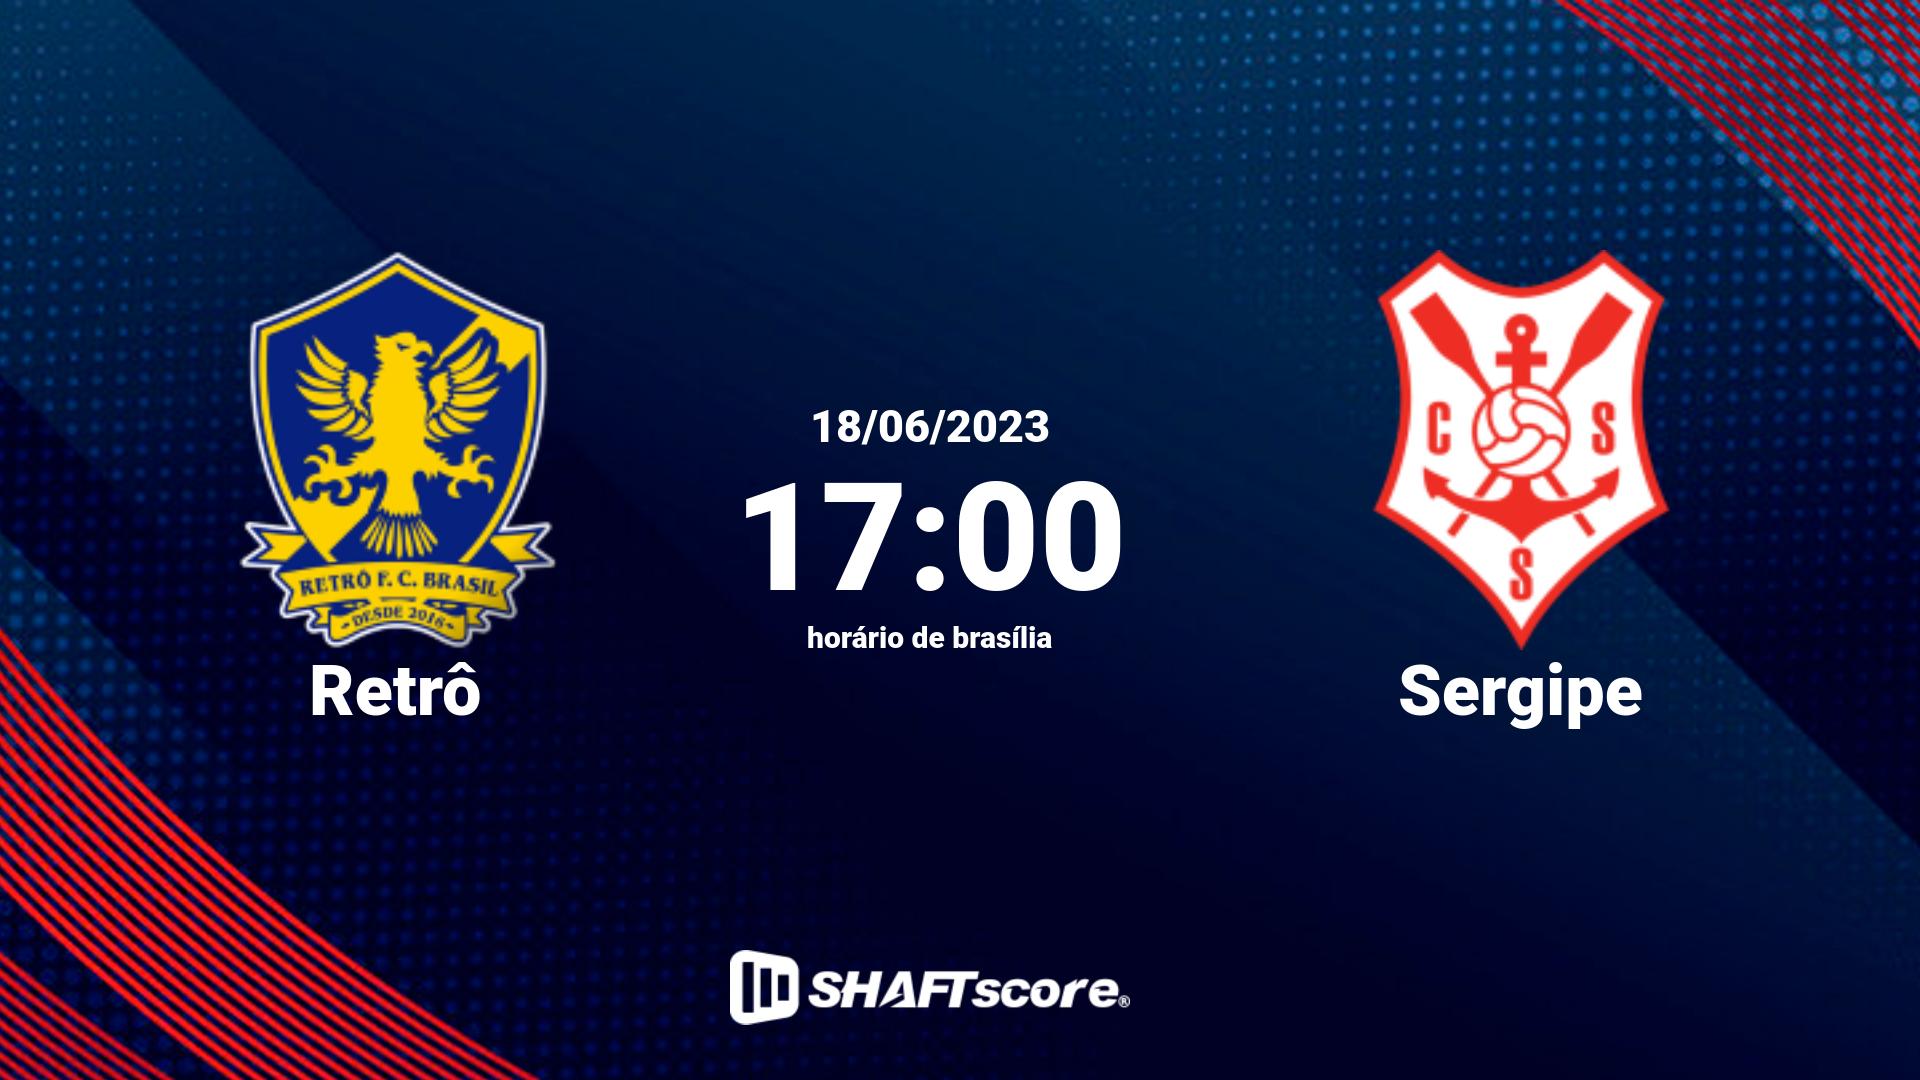 Estatísticas do jogo Retrô vs Sergipe 18.06 17:00